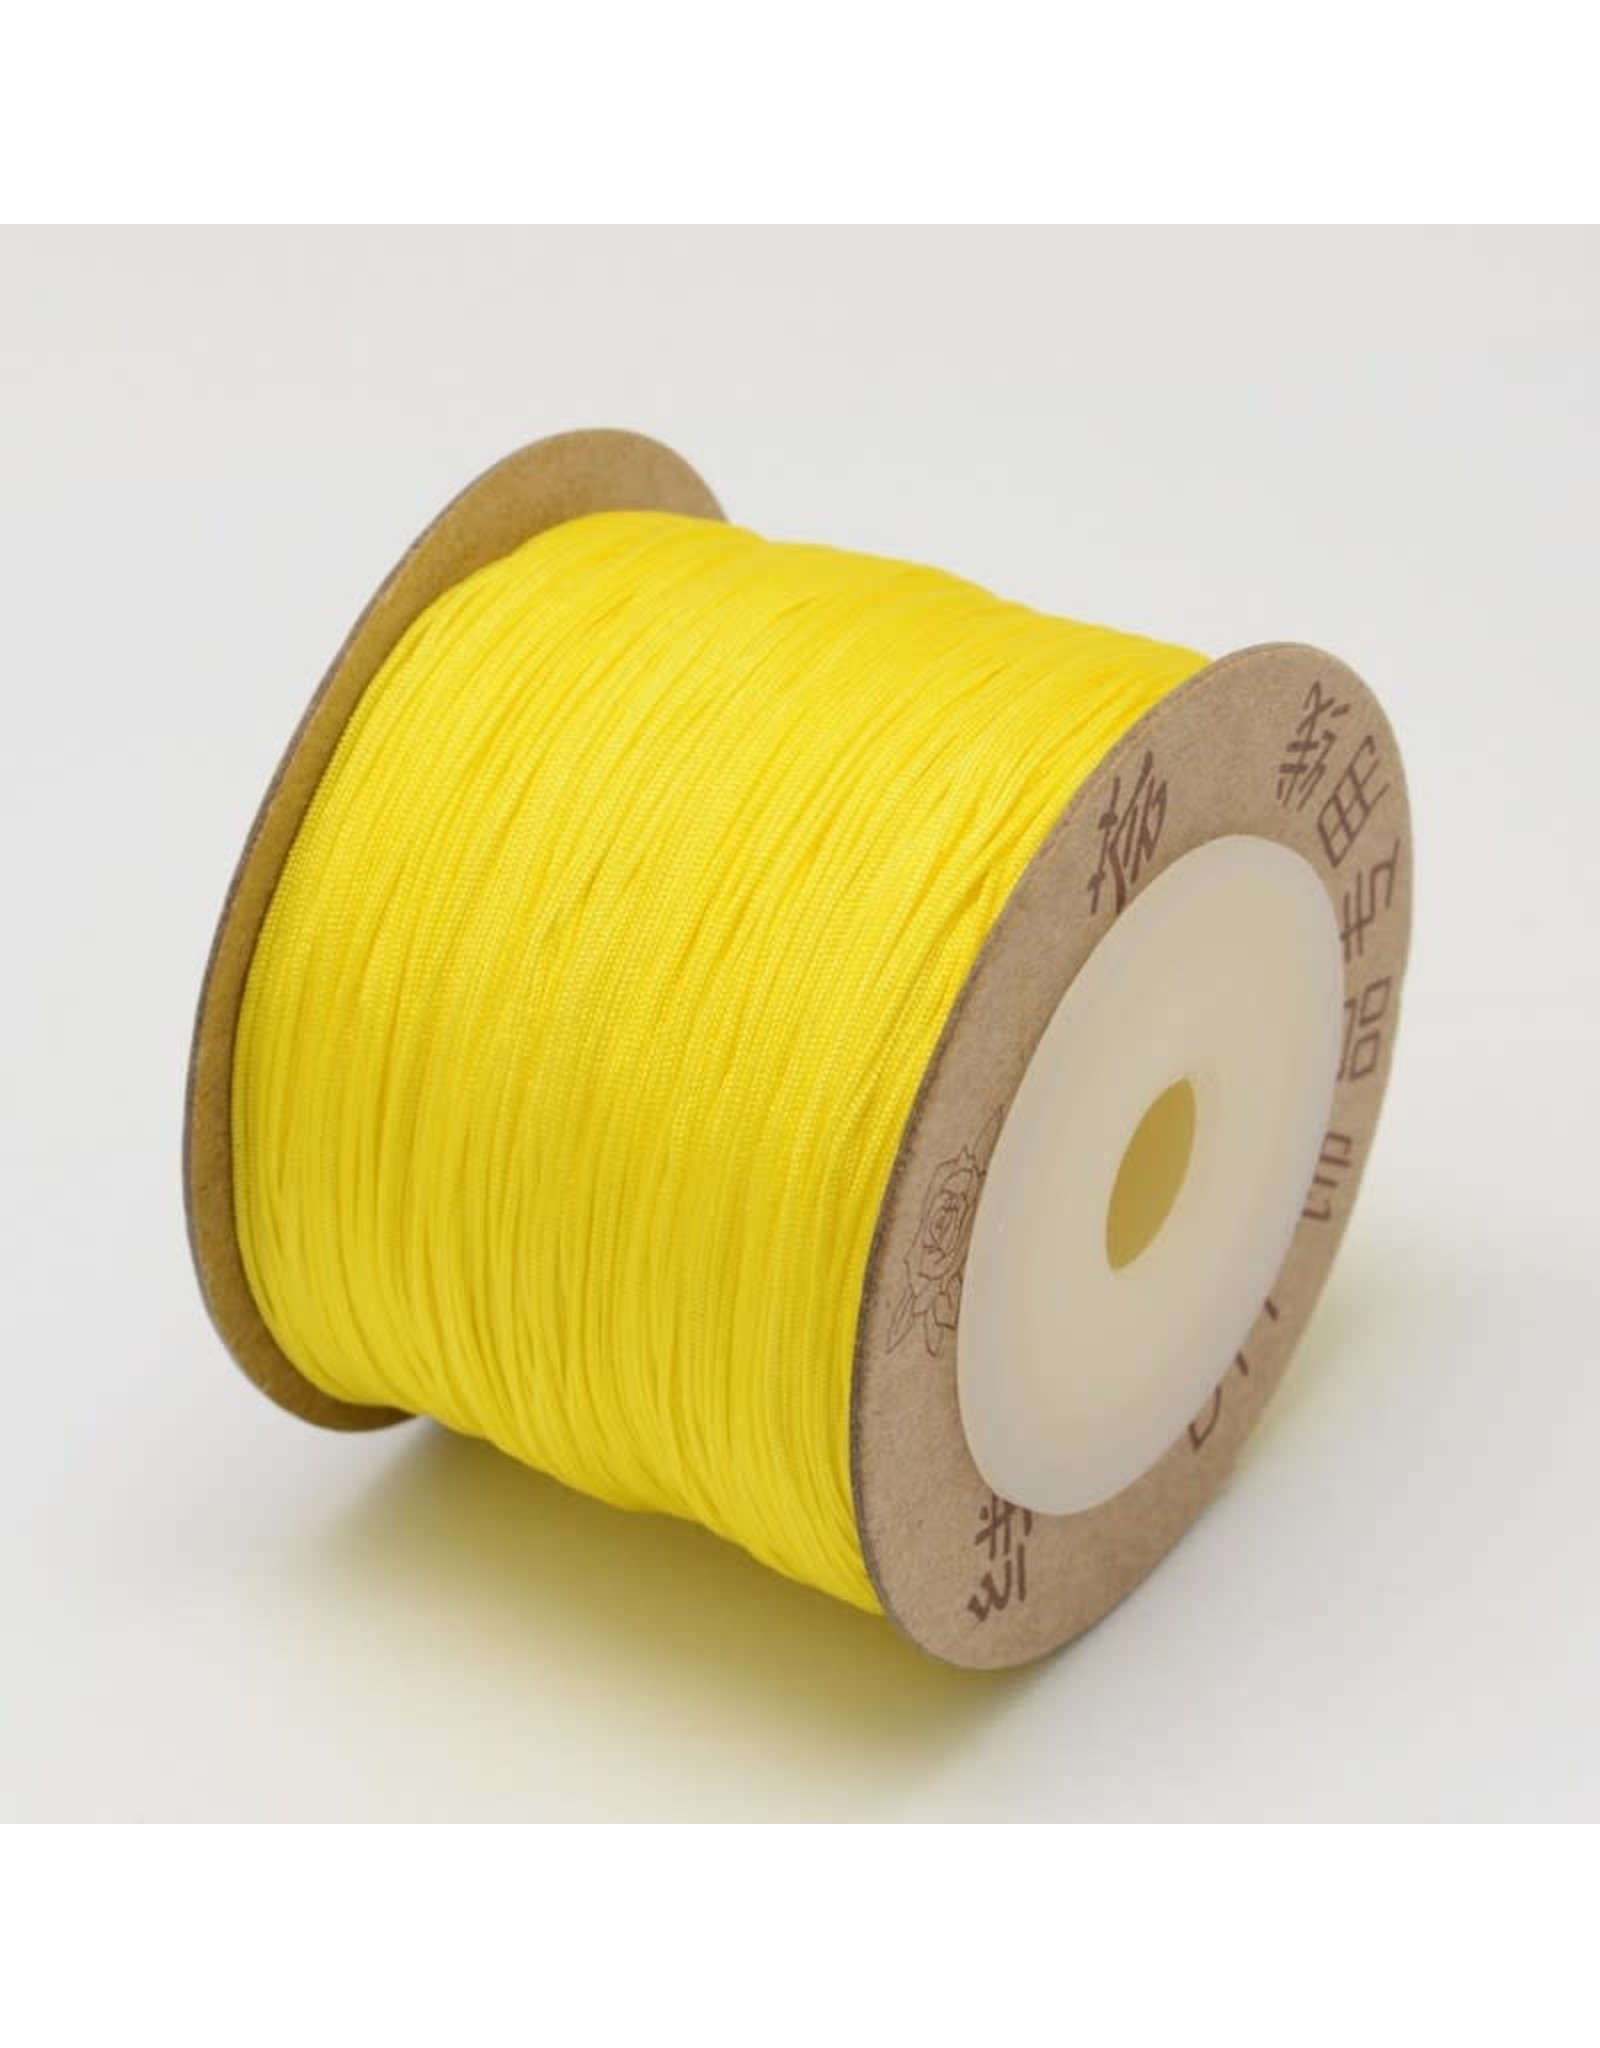 Chinese Knotting Cord .8mm Yellow x100m